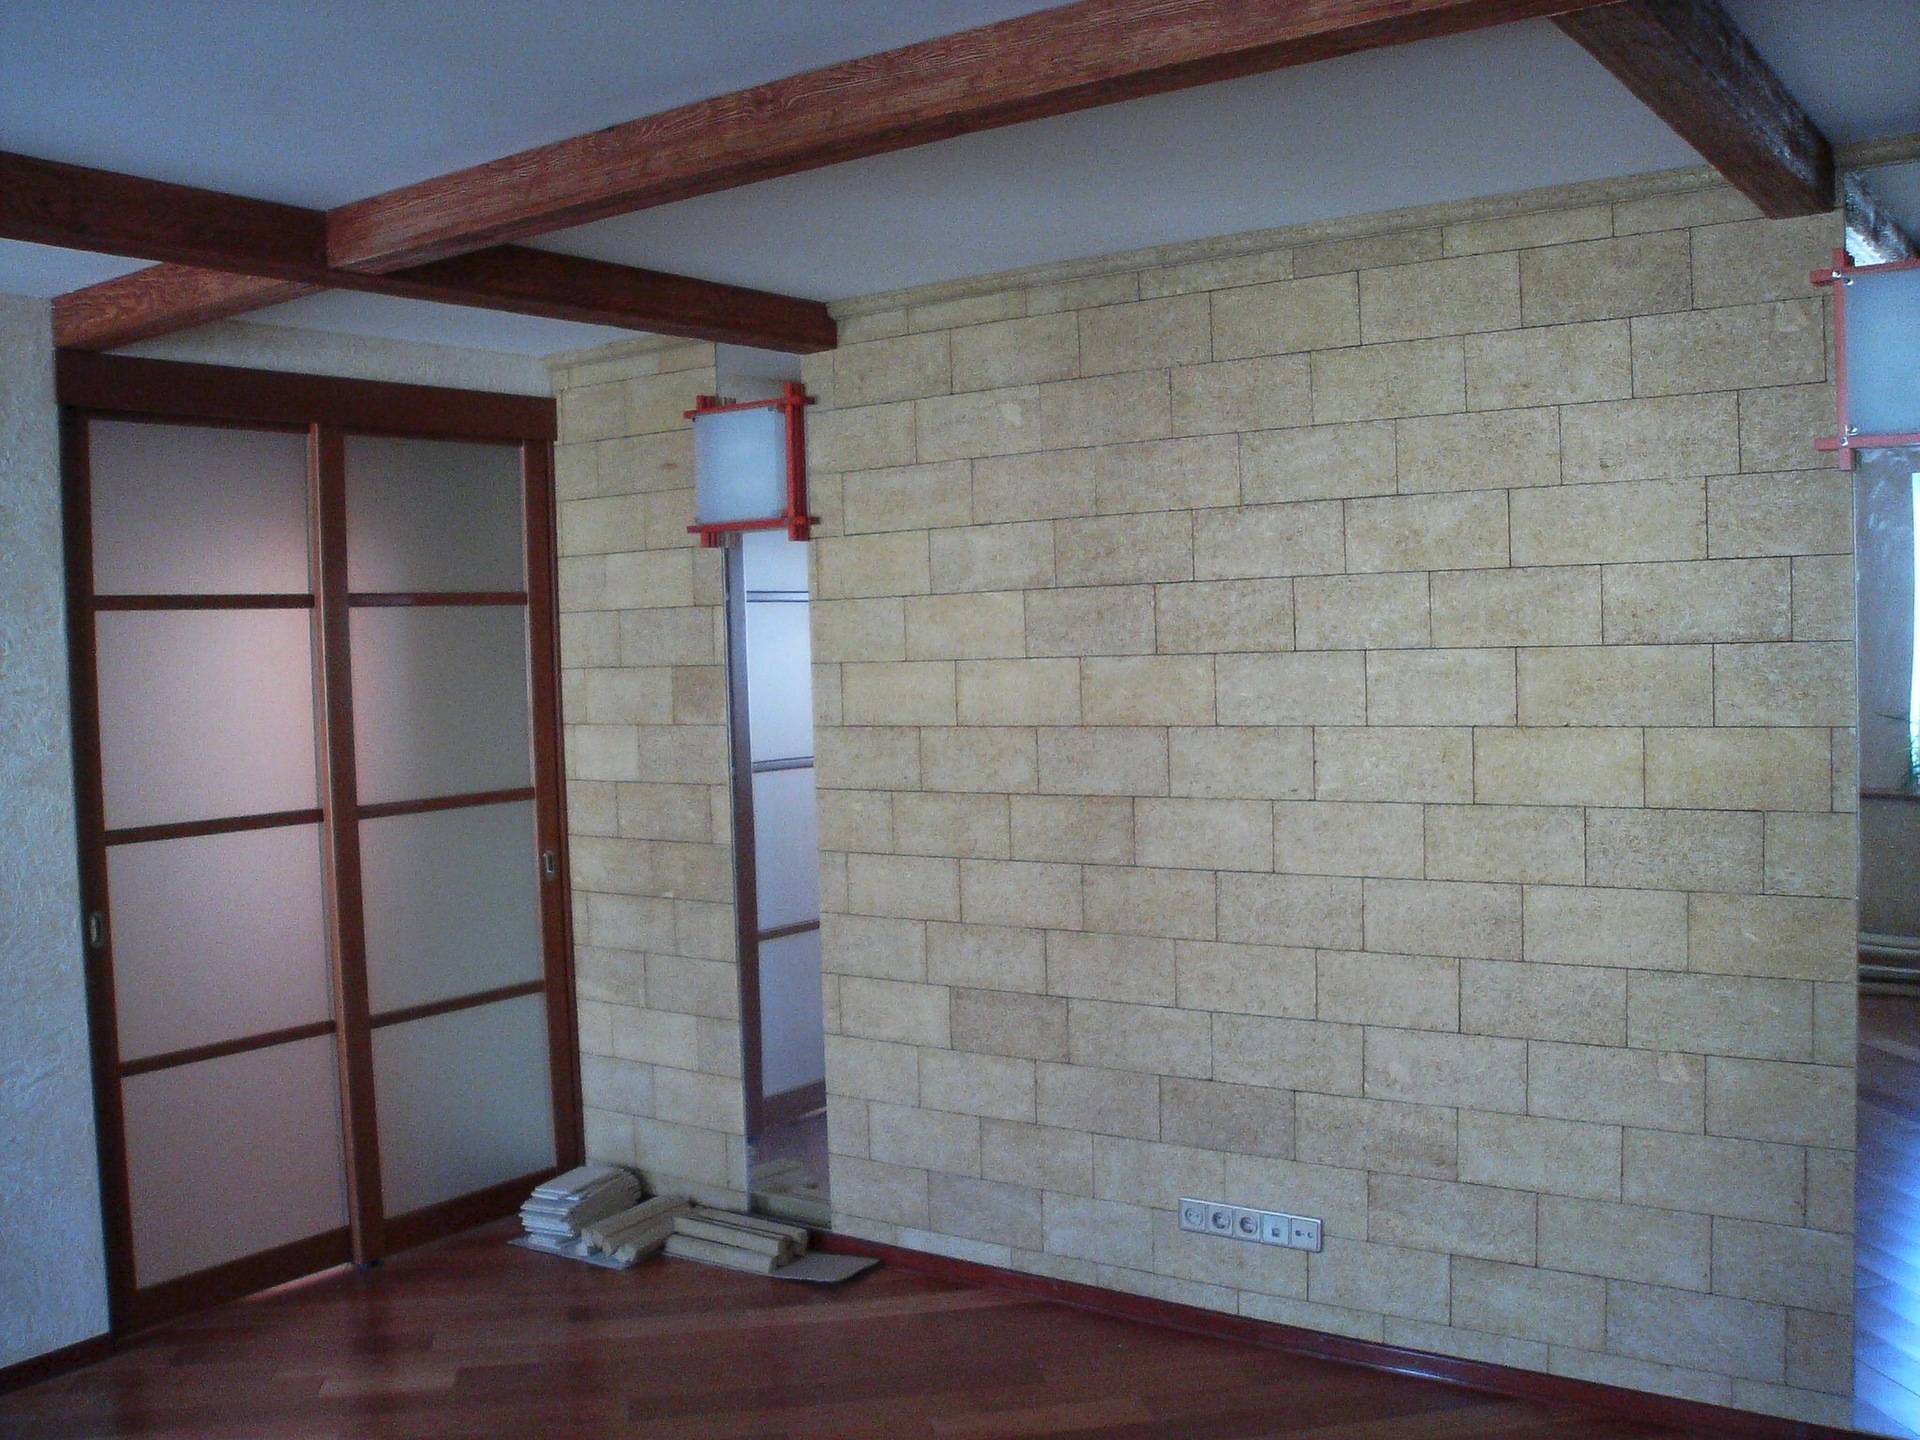 Внутренняя отделка стен дома из газобетона - портал о цементе и бетоне, строительстве из блоковпортал о цементе и бетоне, строительстве из блоков